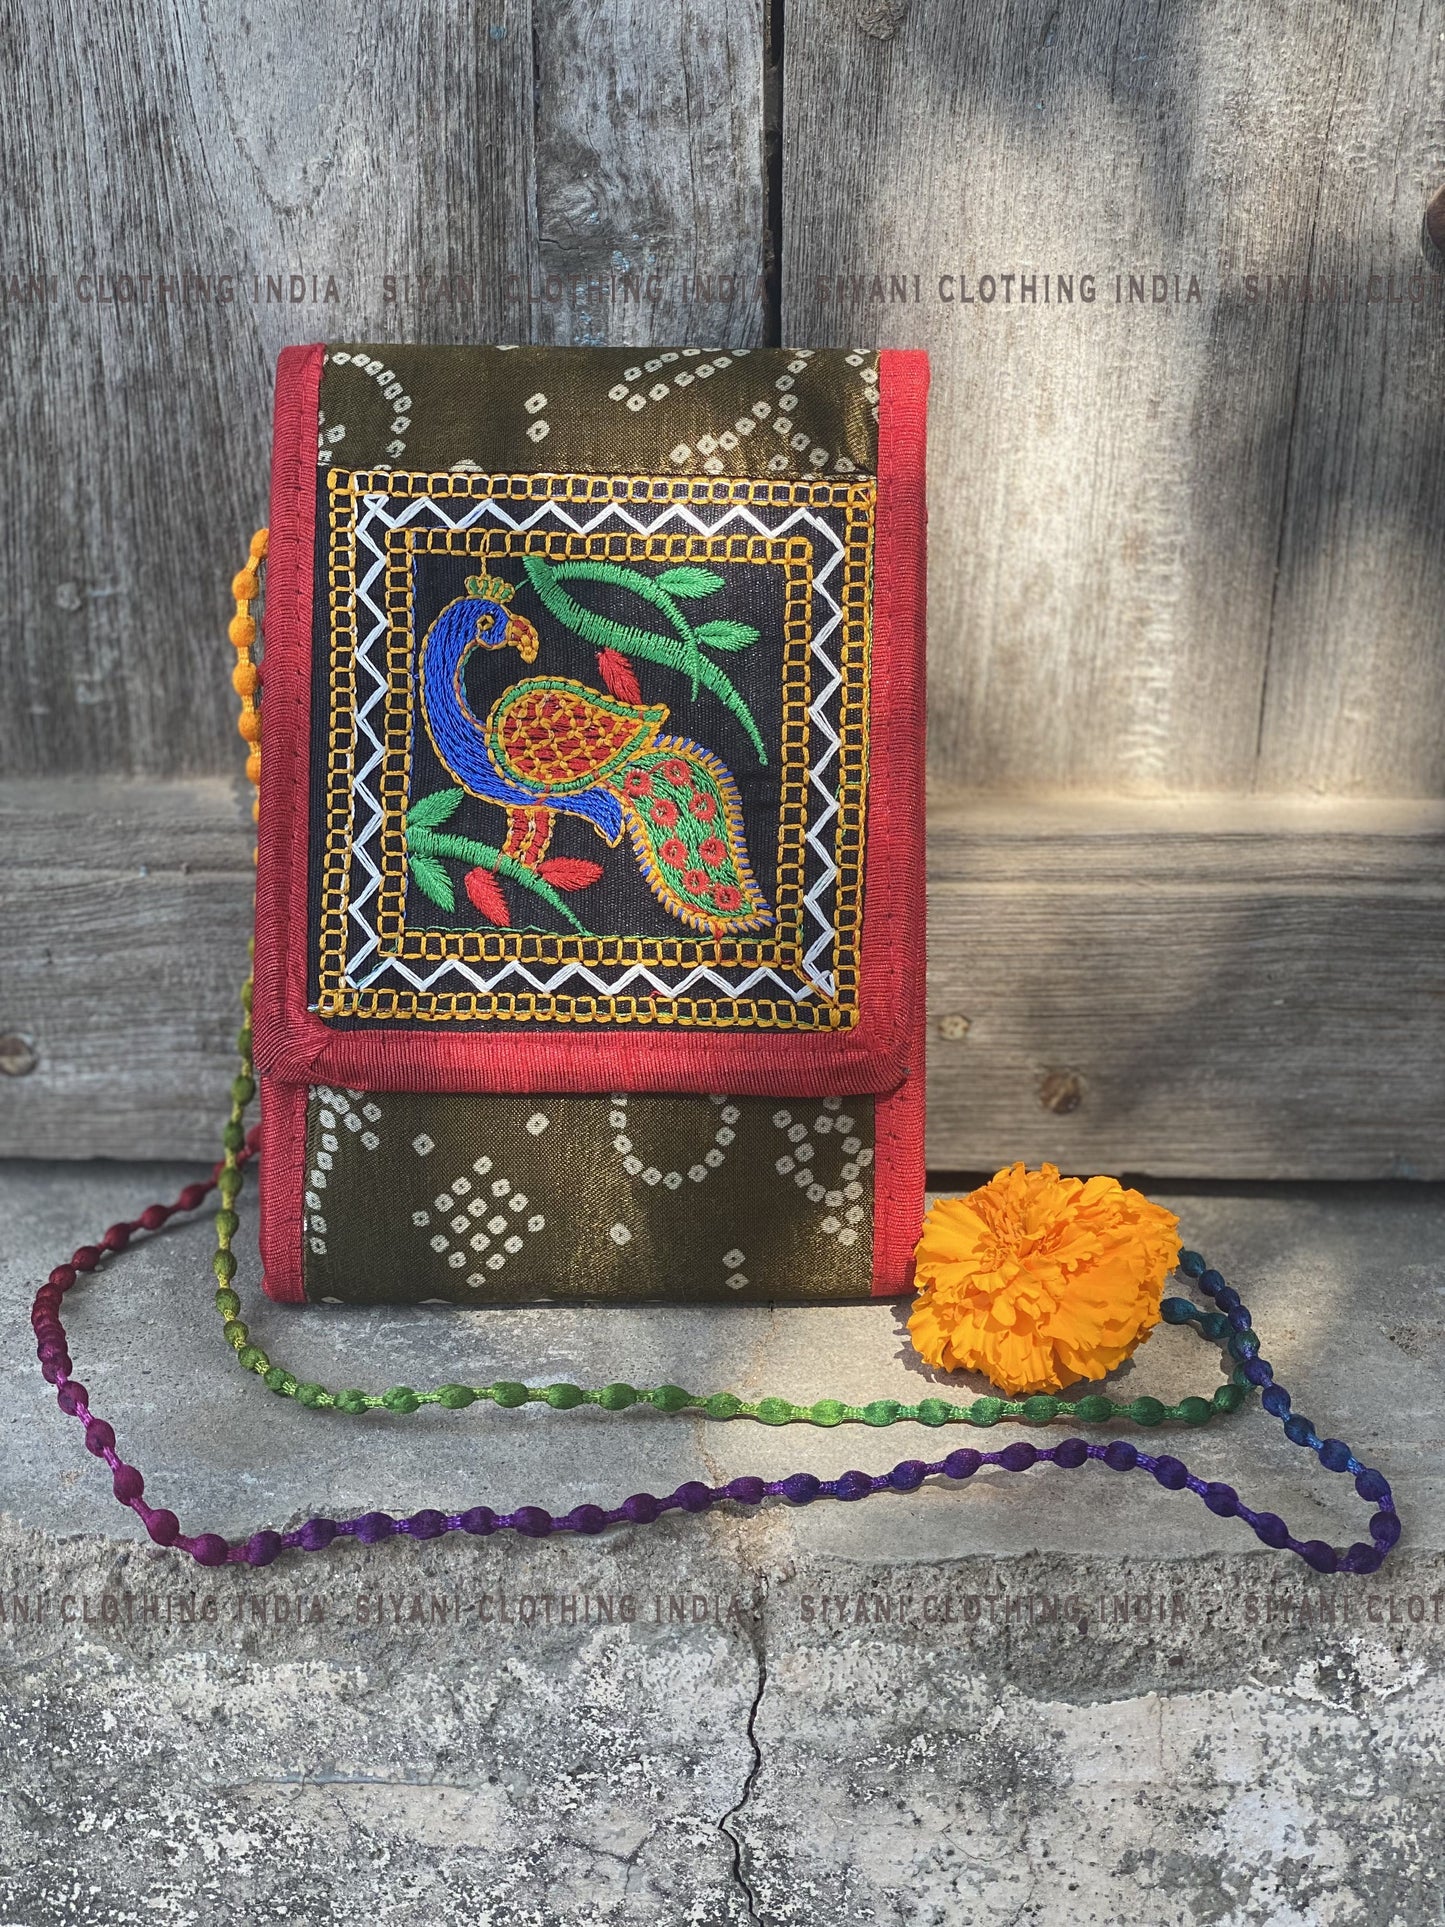 Siyani Brown Thread Embroidered Handmade Tote Bag